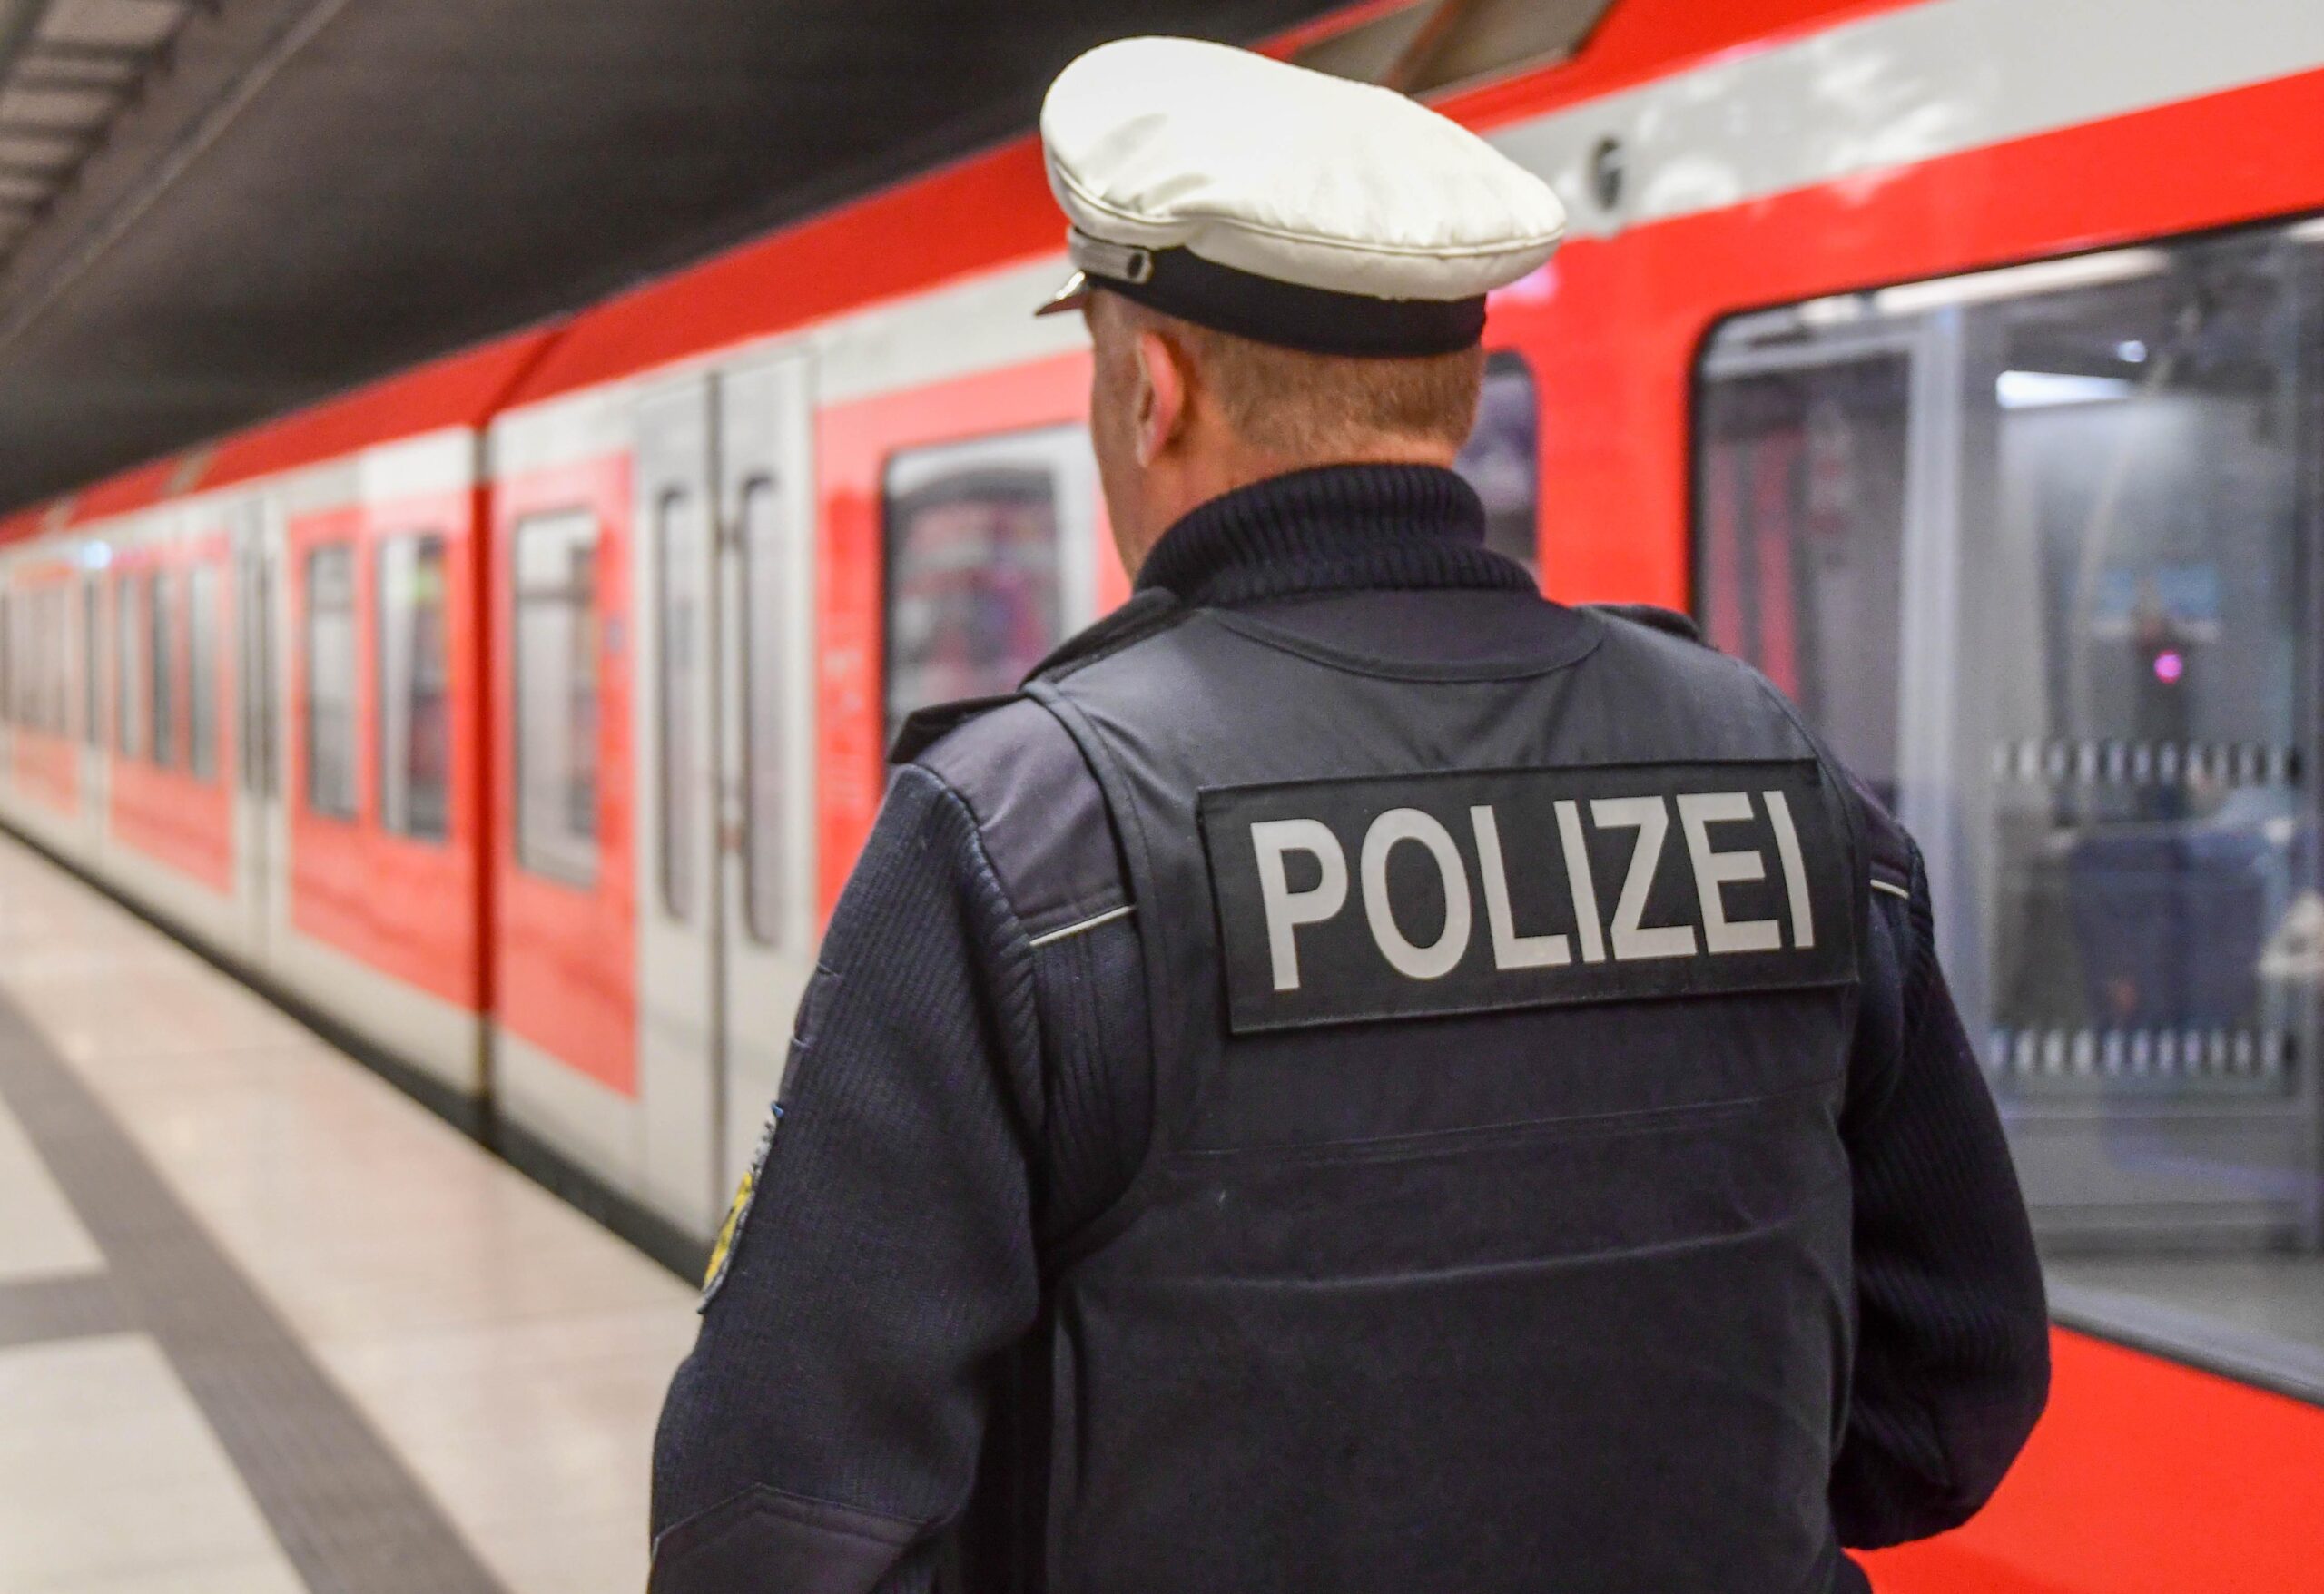 Streit am Bahnhof Reeperbahn – Männer treten Opfer n das Gesicht